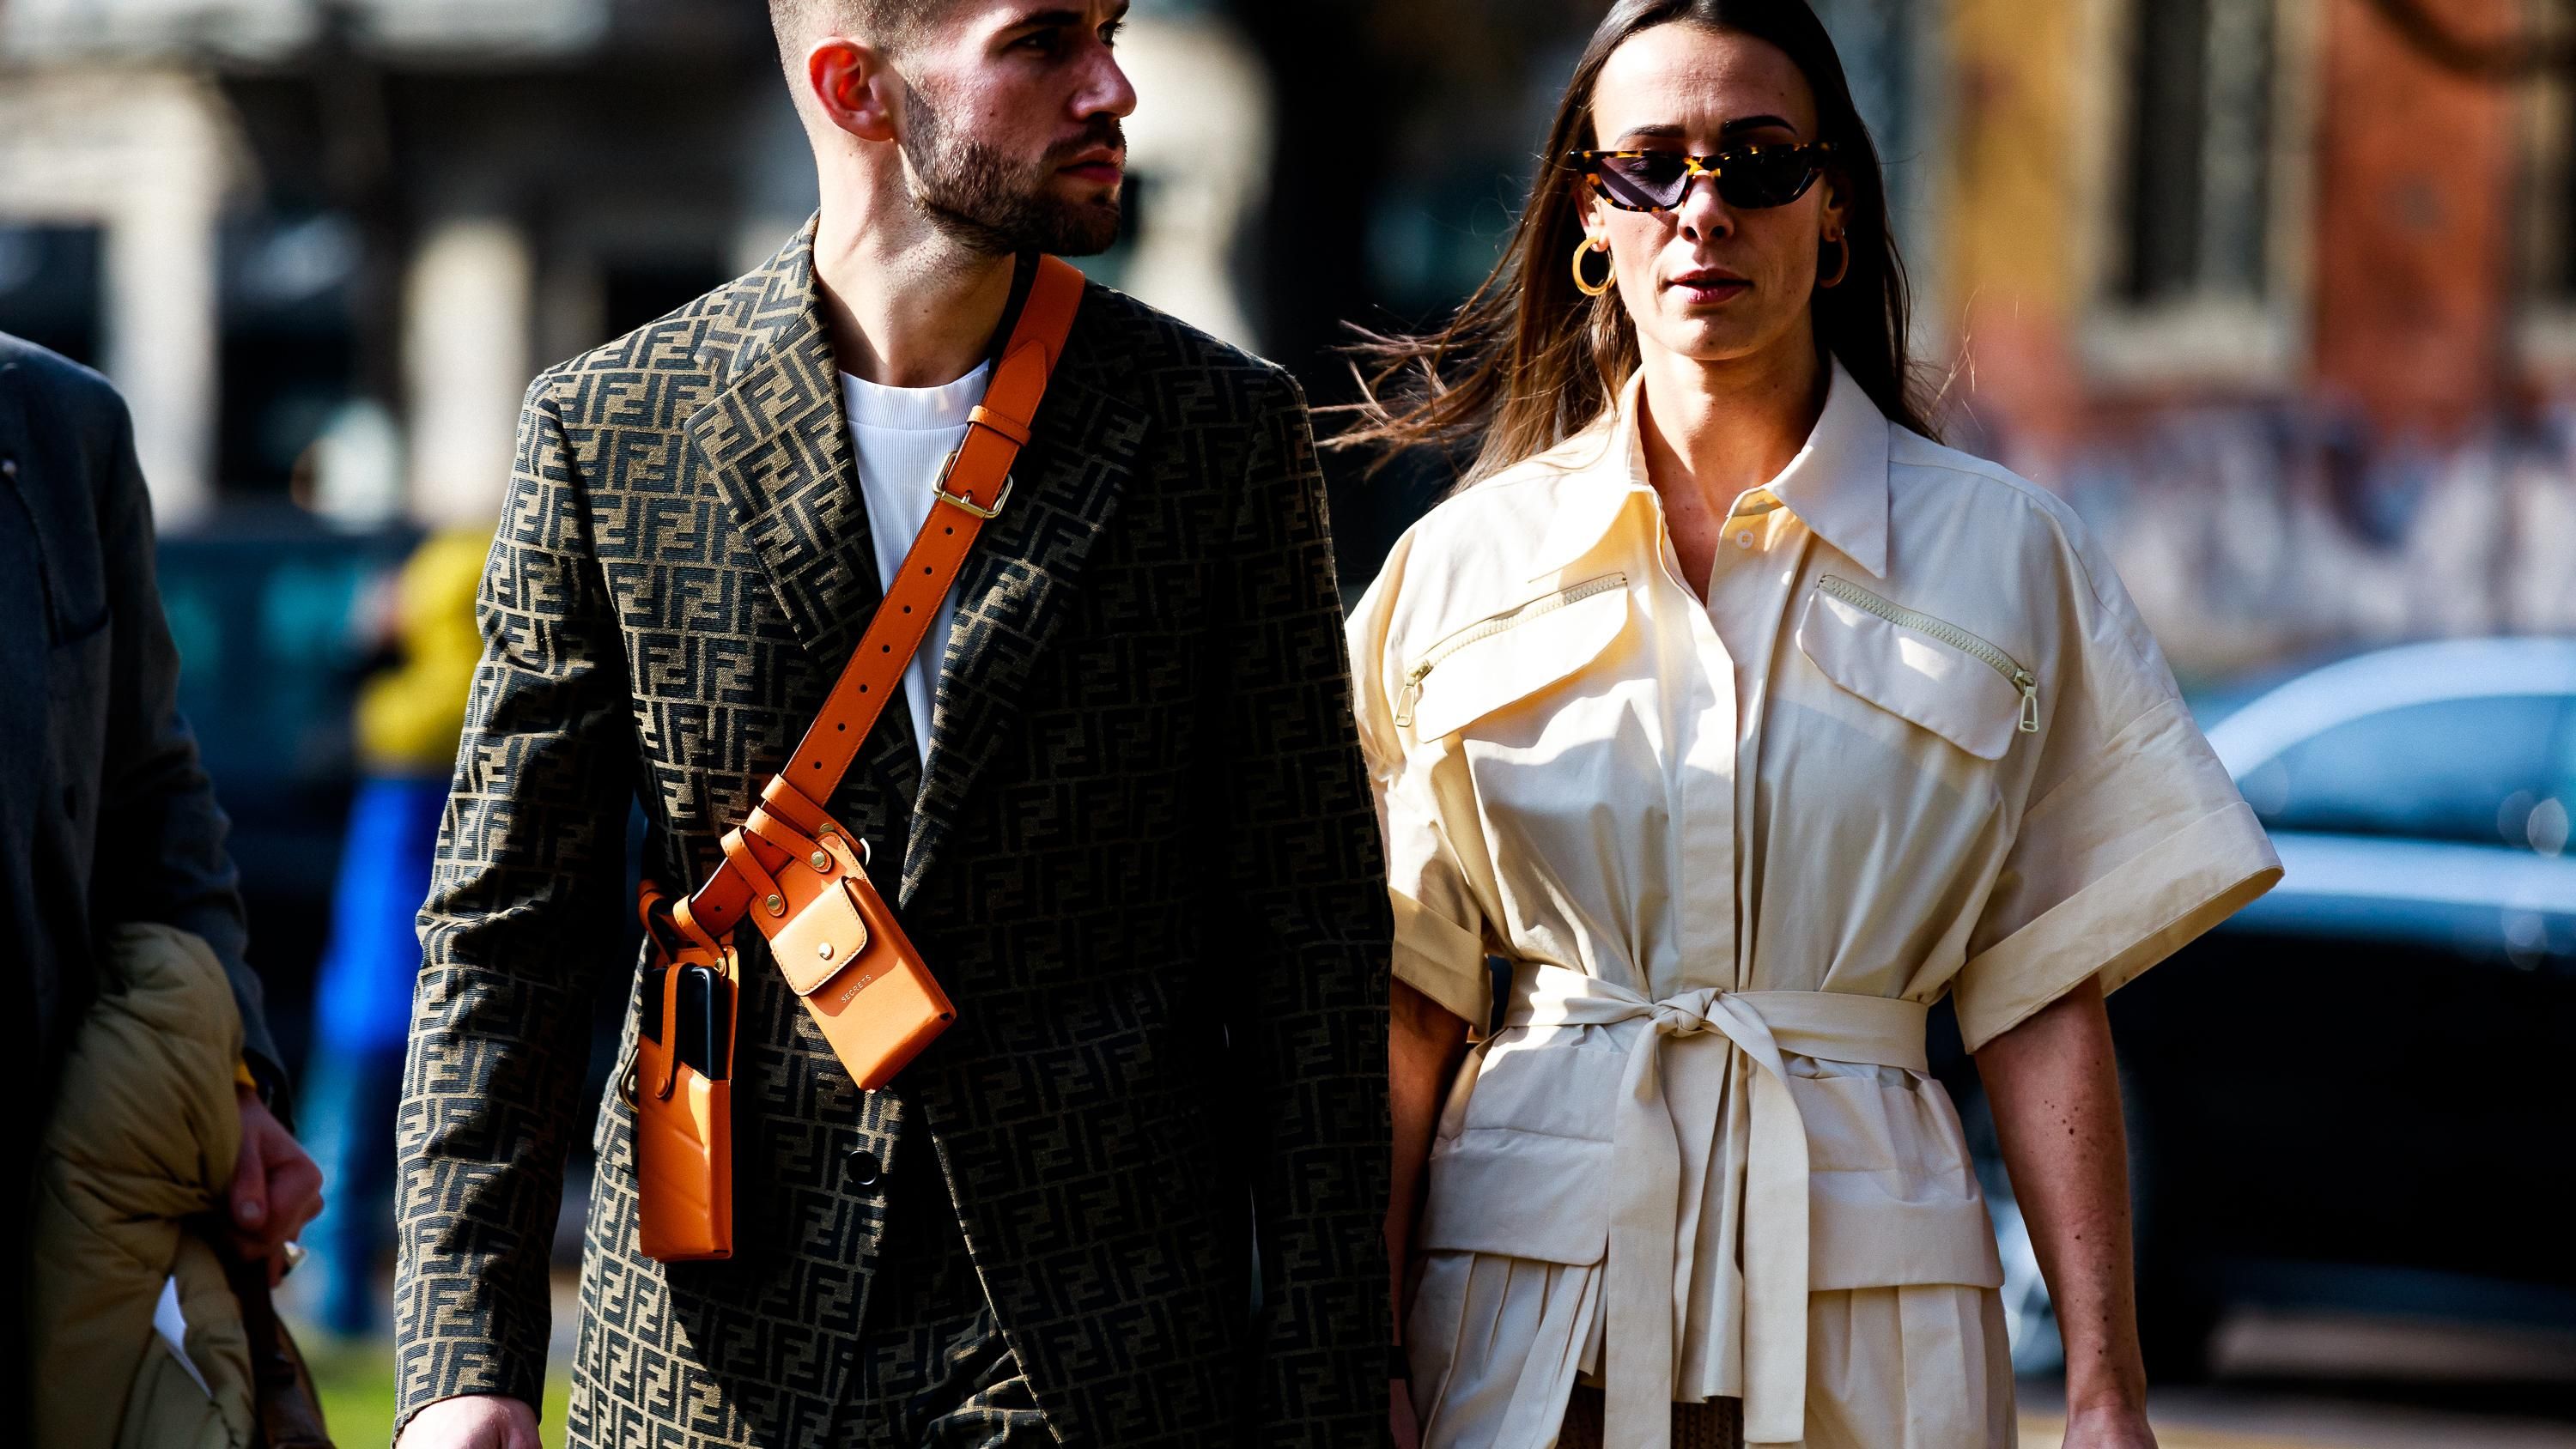 В сети подытожили лучшие street style образы на Неделе моды в Милане: стильные кадры